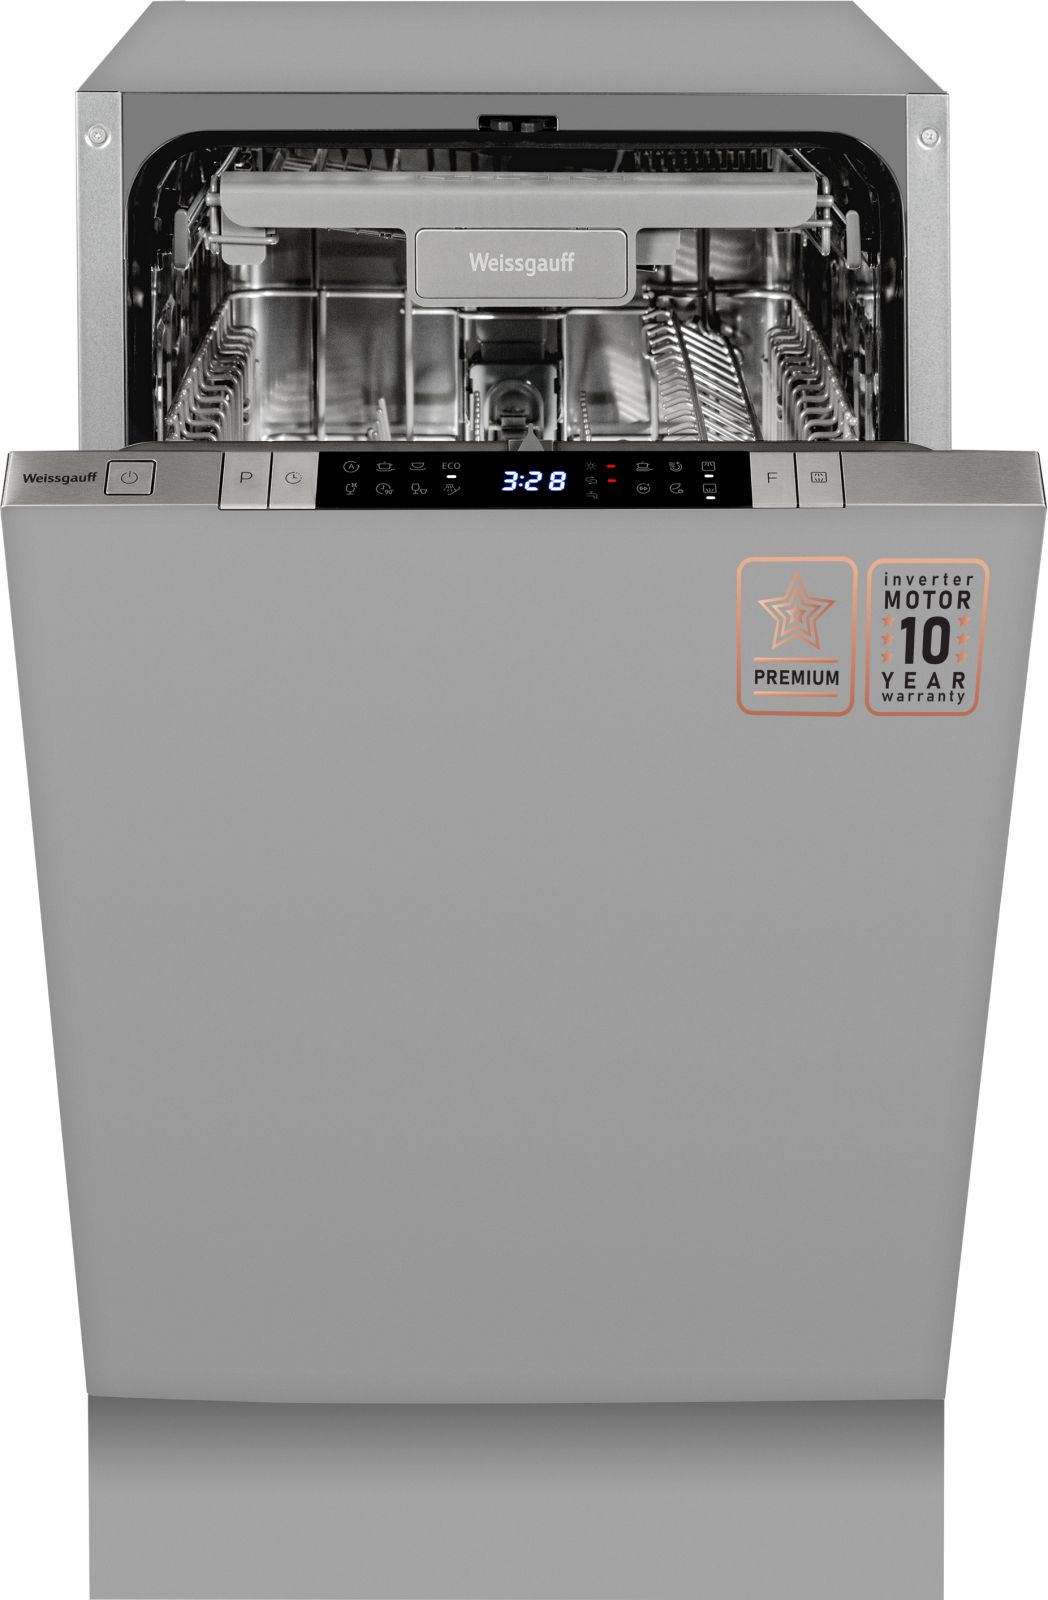 Посудомоечная машина встраив. Weissgauff BDW 4150 Touch DC Inverter узкая серебристый